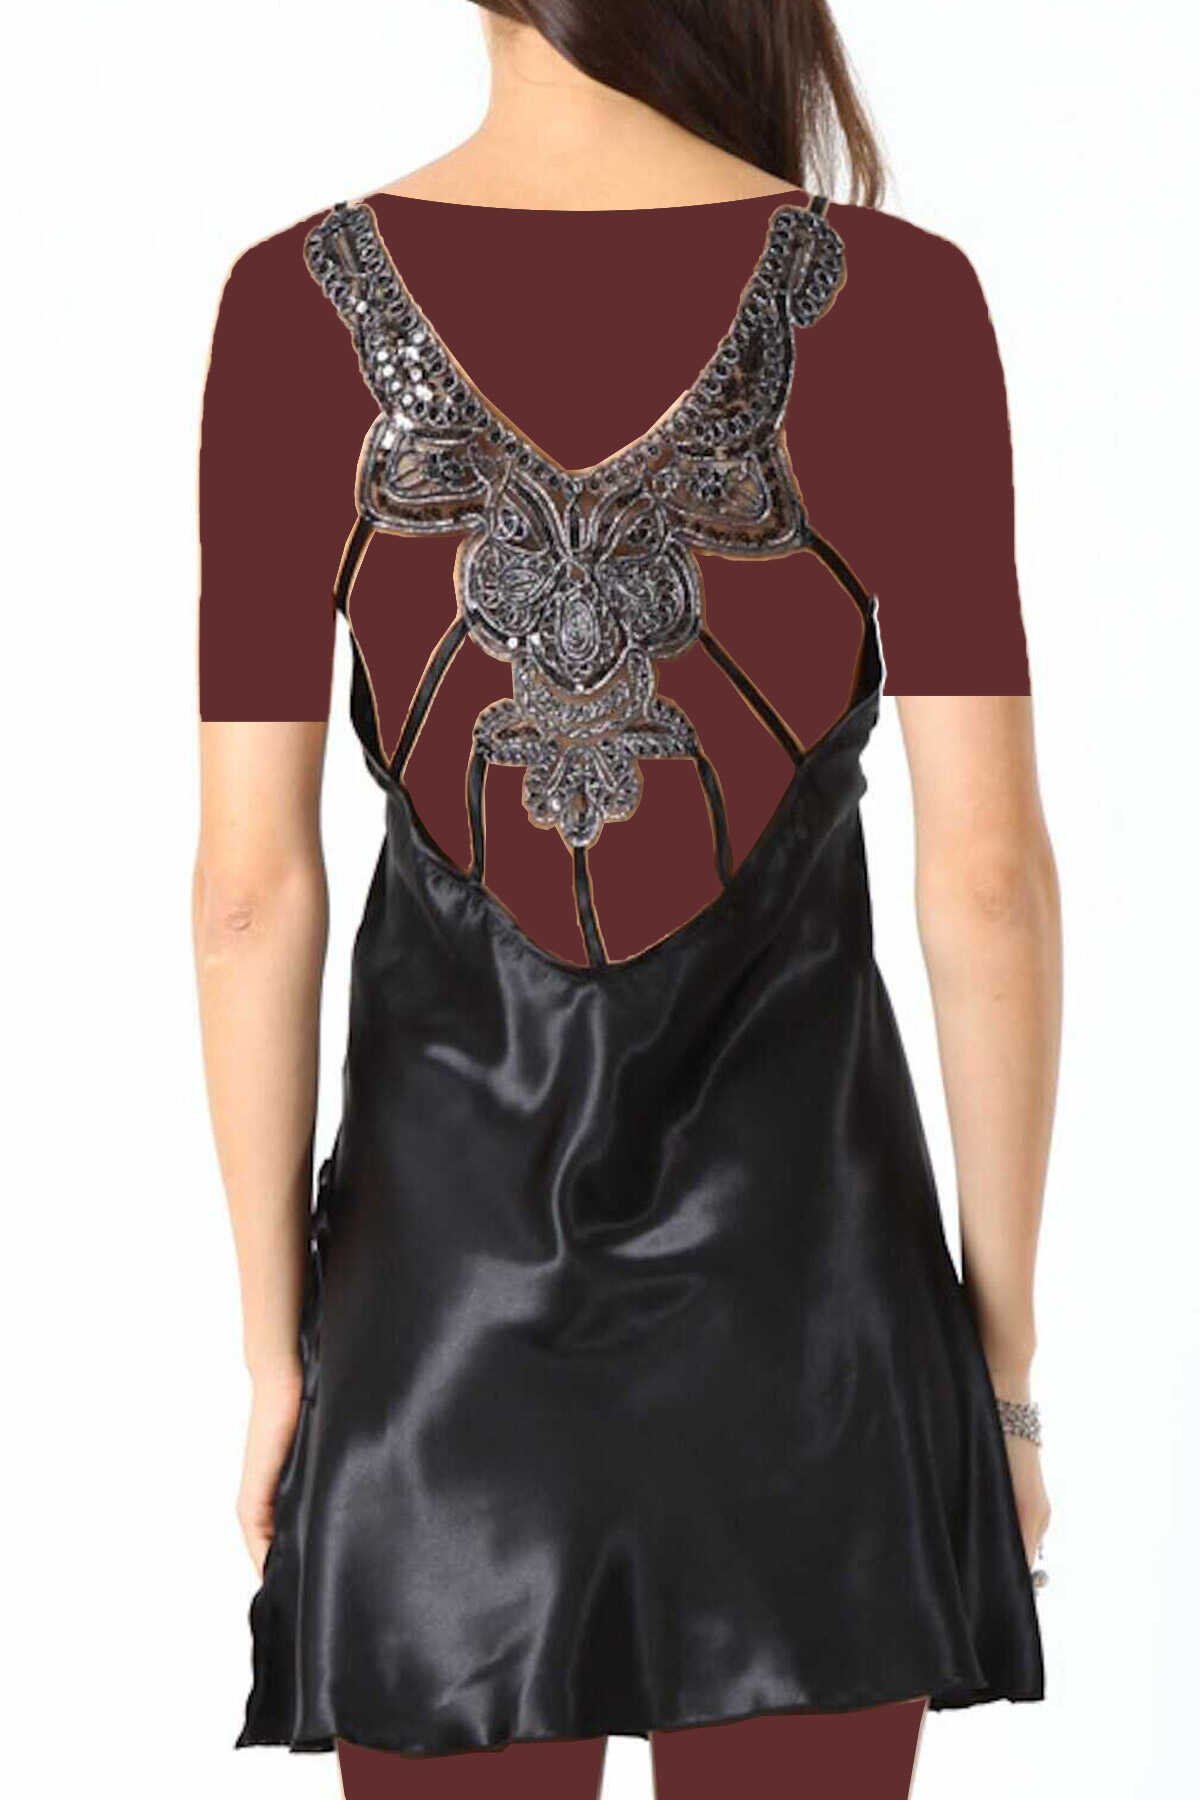 لباس خواب کوتاه زنانه ساتن گیپوری پشت طرح دار بندی چاک دار مشکی برند Miorre 